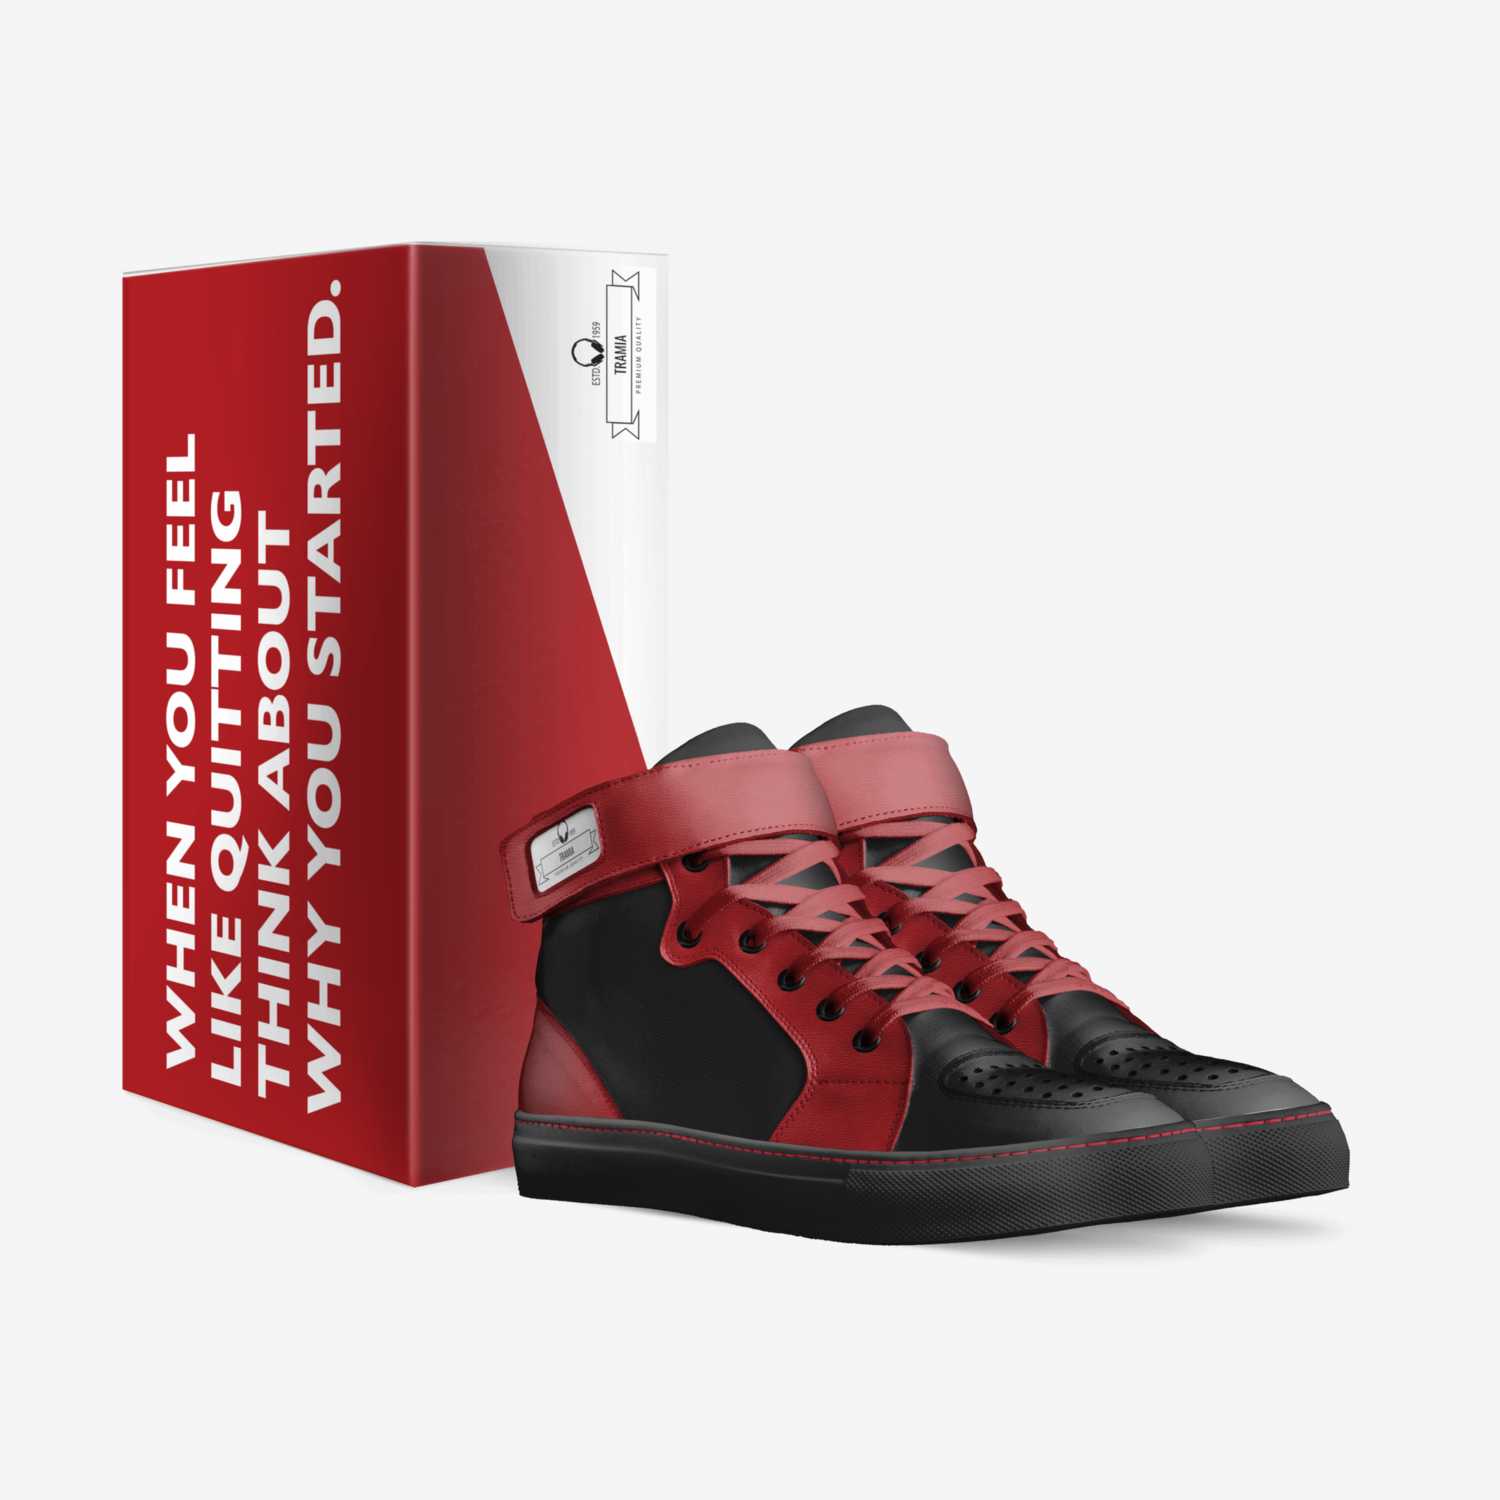 Tramia custom made in Italy shoes by Tramia Lockridge | Box view